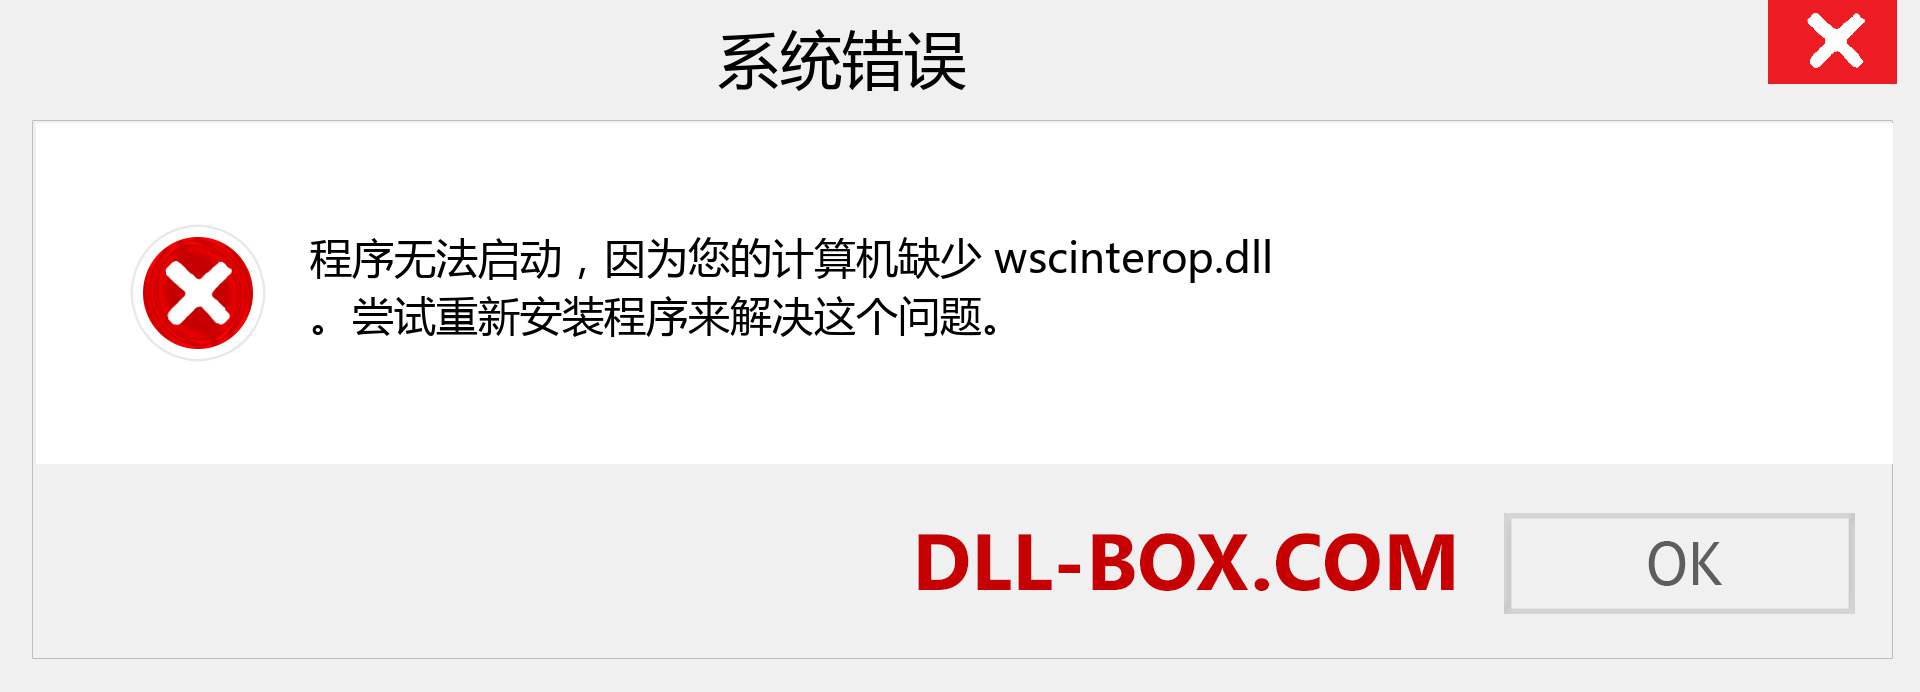 wscinterop.dll 文件丢失？。 适用于 Windows 7、8、10 的下载 - 修复 Windows、照片、图像上的 wscinterop dll 丢失错误